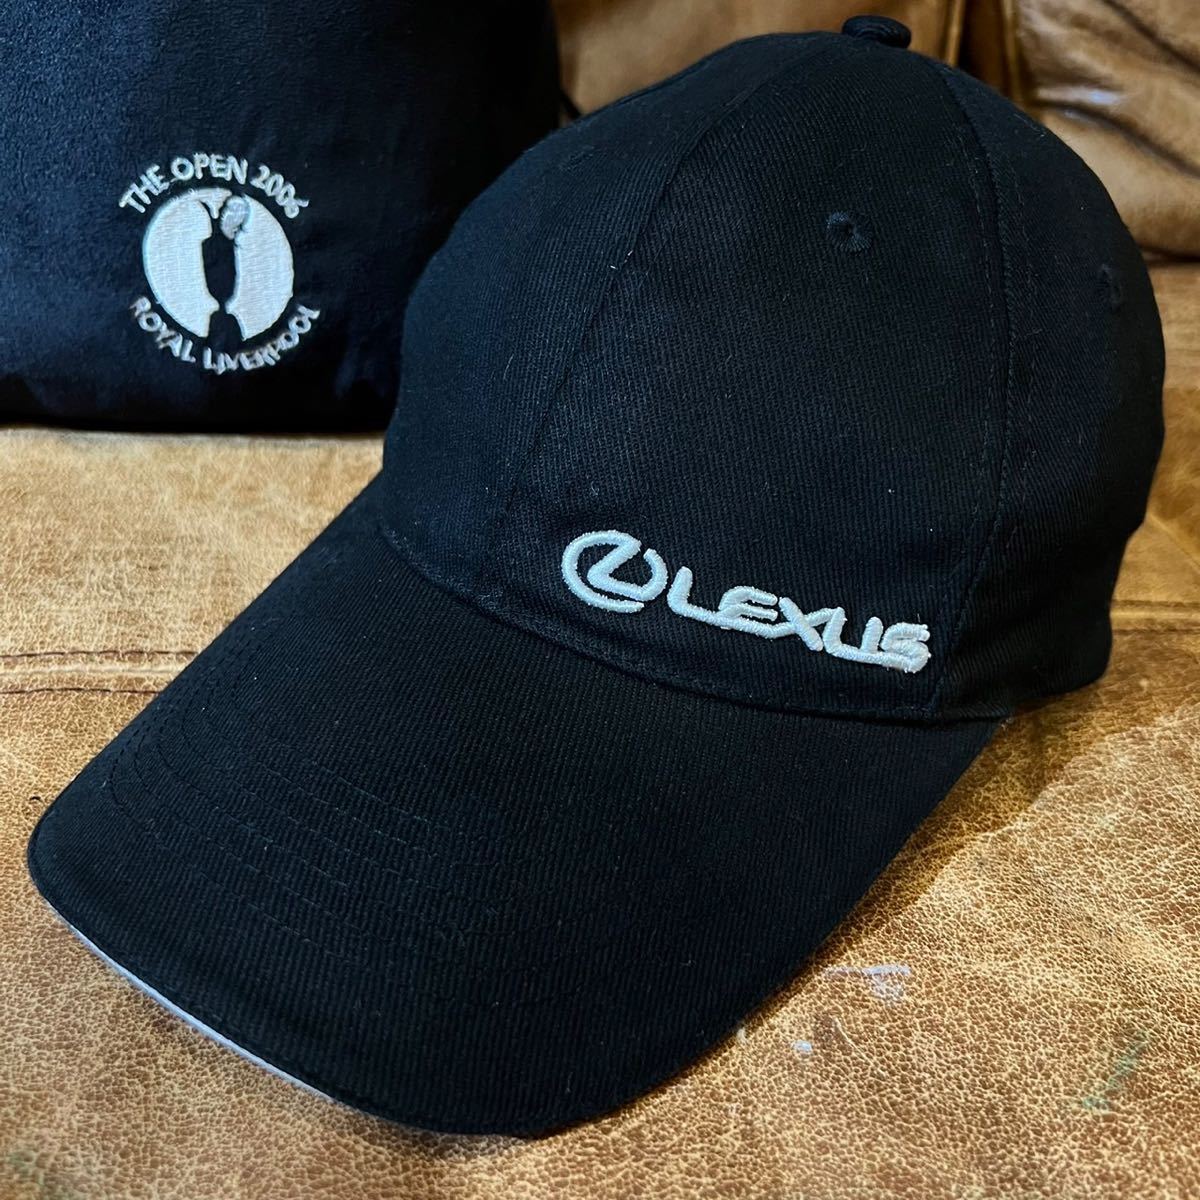 【即決】LEXUS レクサス ゴルフ キャップ 帽子 ブラック ロゴ 黒 バッグ 巾着 セット the open 2006 royal liverpool オープン ロイヤル_画像2